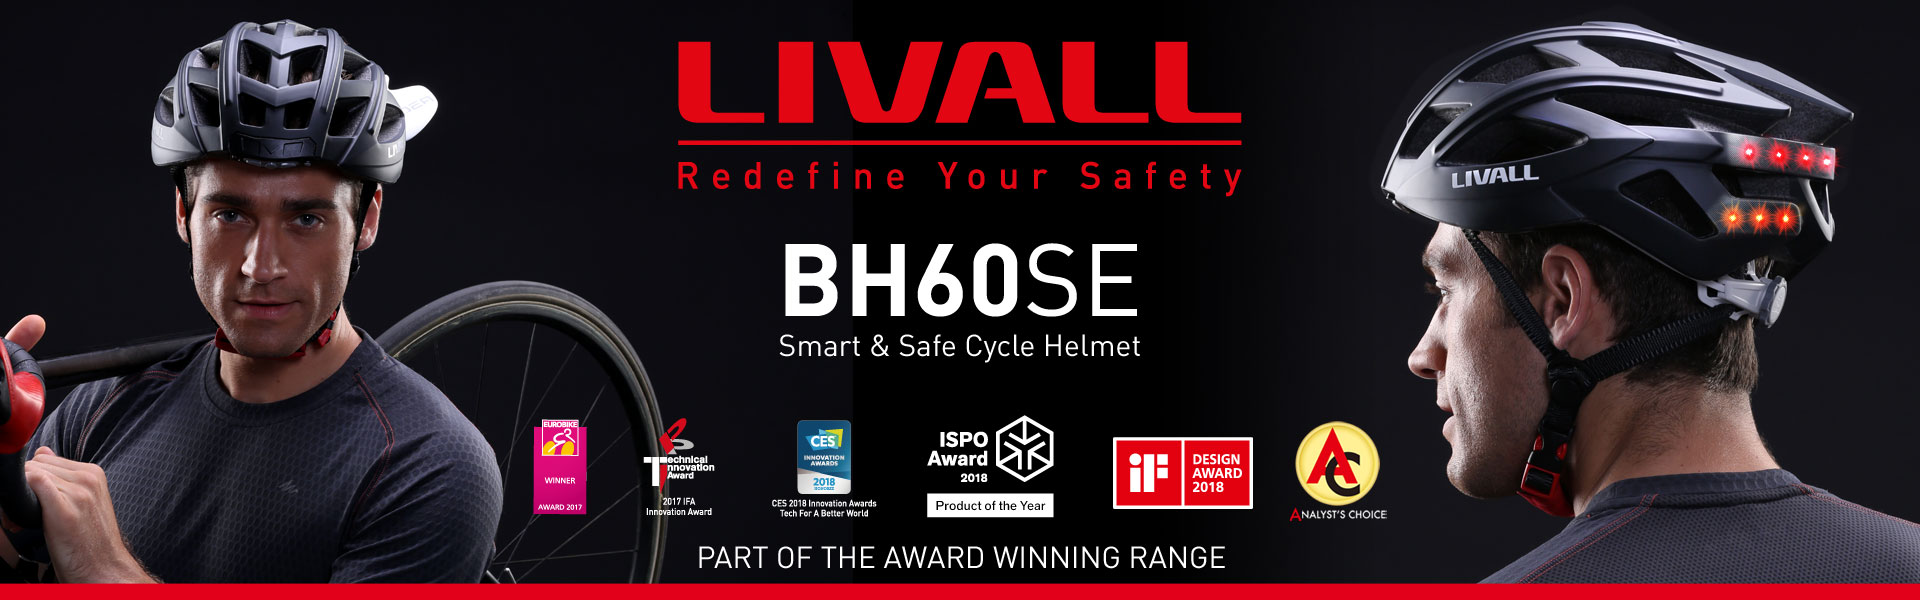 LIVALL BH60SE Smart Helmet Banner